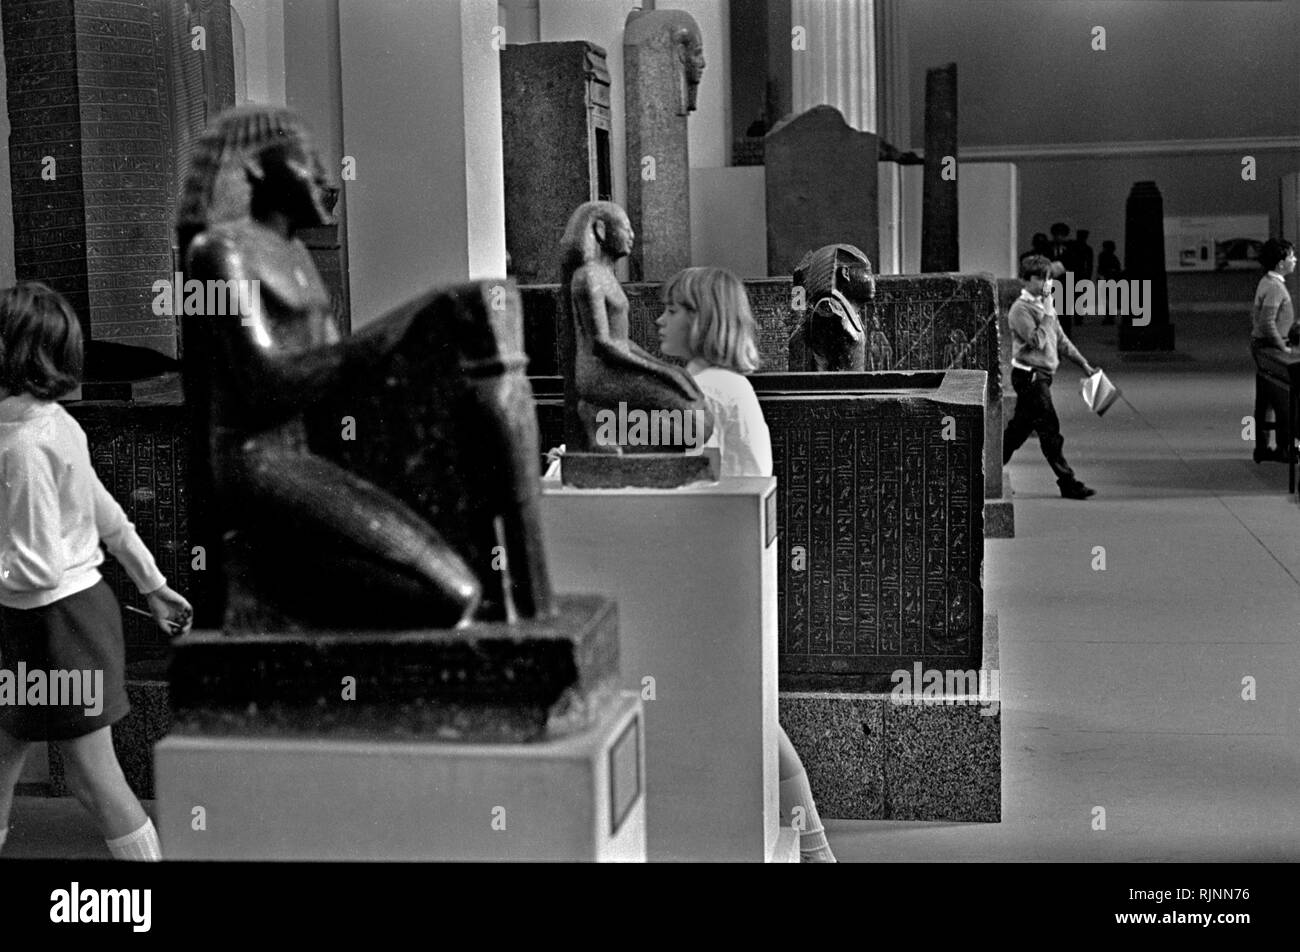 Sortie scolaire au British Museum 1960s voyage scolaire au Royaume-Uni au centre de Londres. Les écoliers et les enfants se promènent dans le musée où se trouvent d'anciennes sculptures égyptiennes, aujourd'hui appelée galerie de sculptures égyptiennes. 1969 HOMER SYKES Banque D'Images